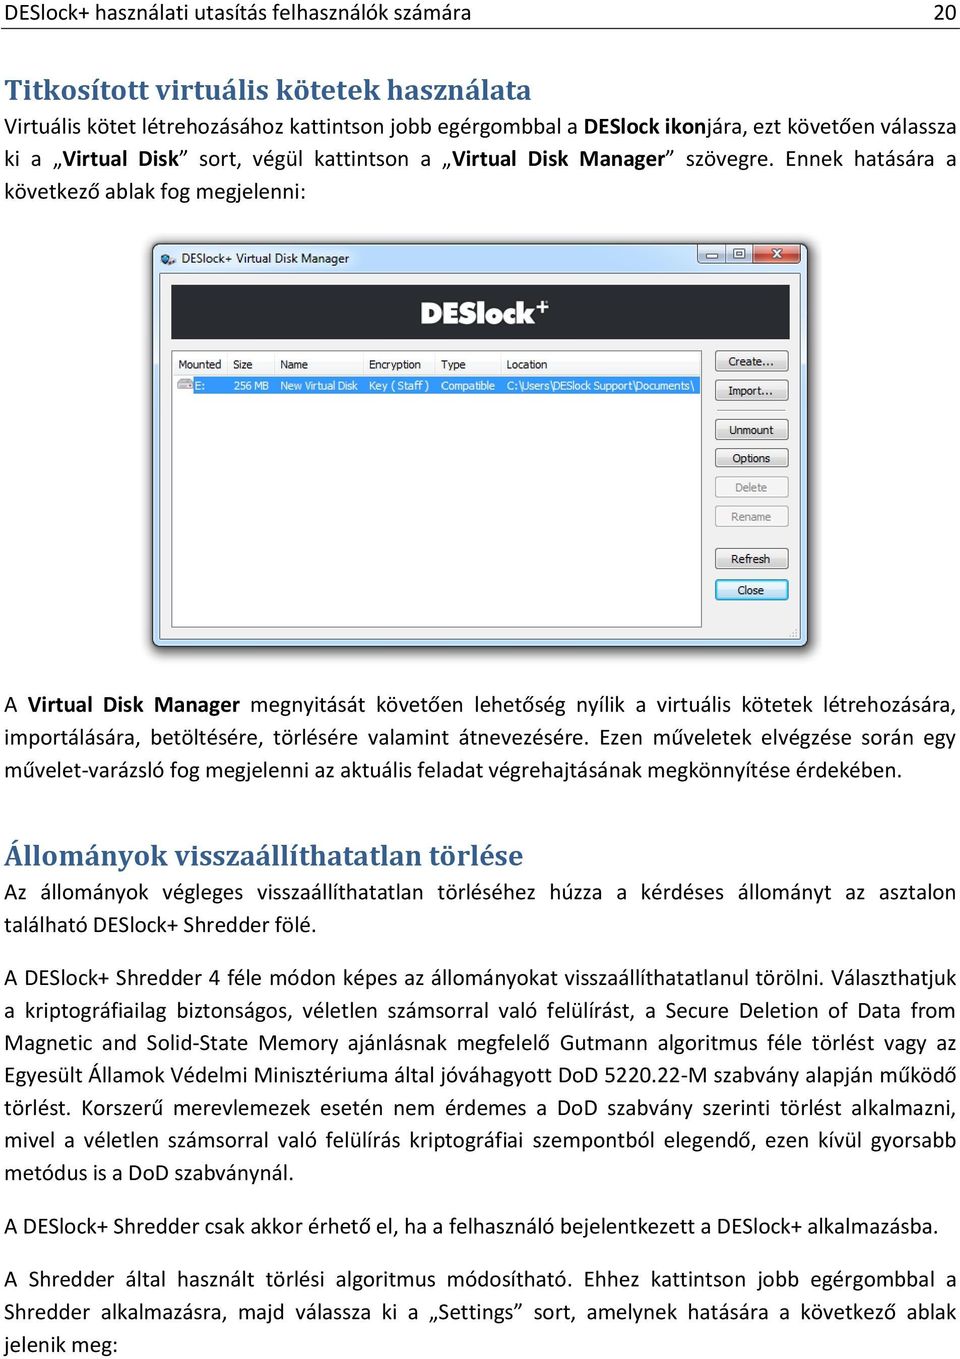 Ennek hatására a következő ablak fog megjelenni: A Virtual Disk Manager megnyitását követően lehetőség nyílik a virtuális kötetek létrehozására, importálására, betöltésére, törlésére valamint